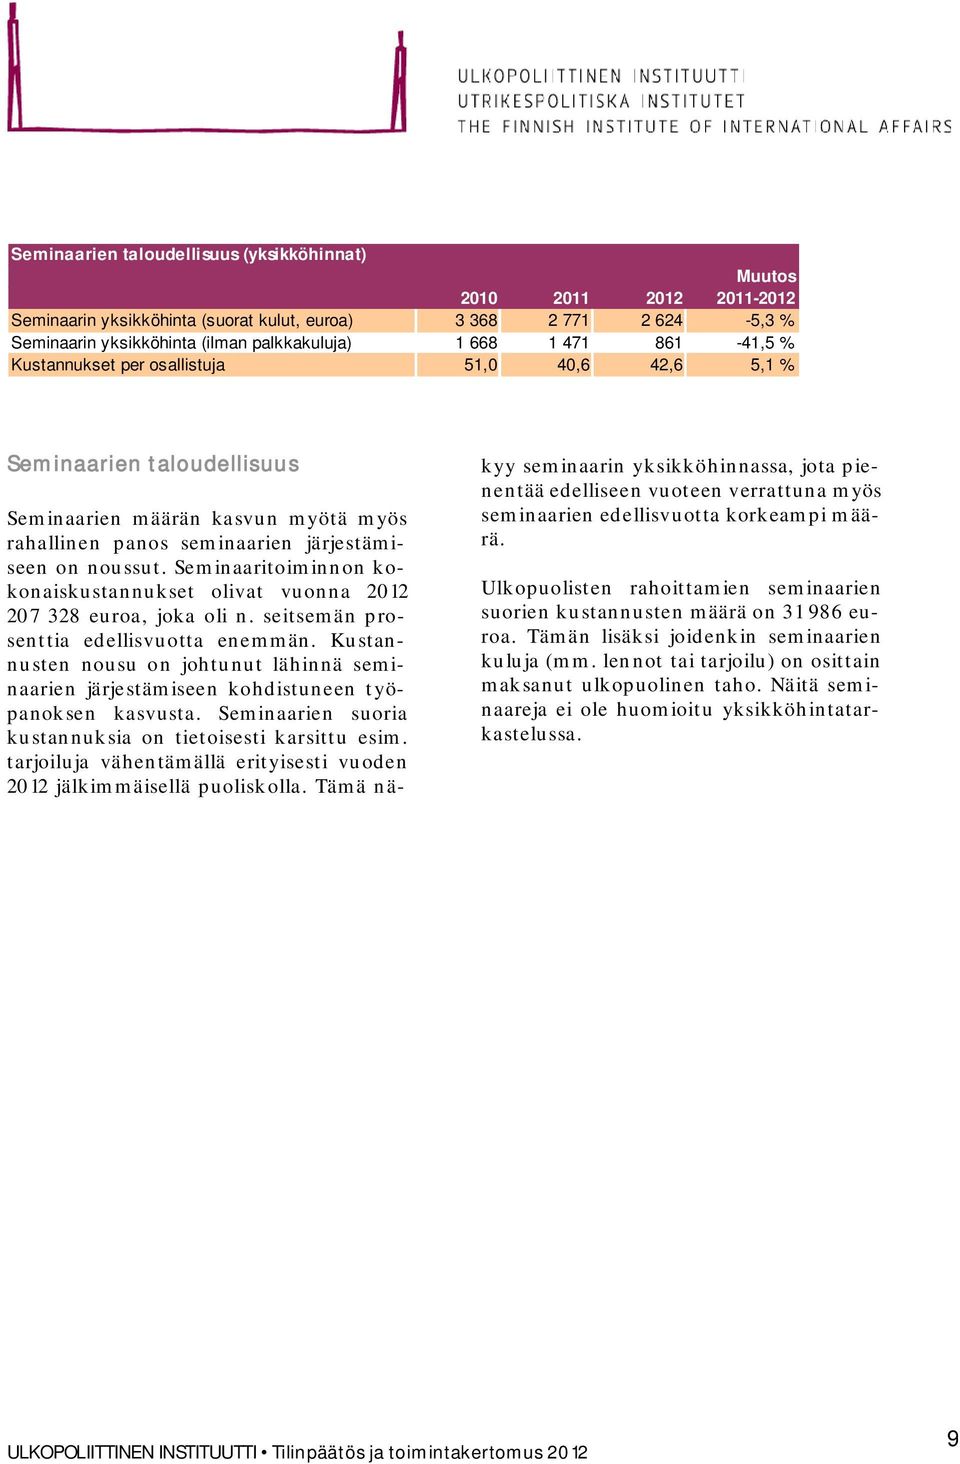 Seminaaritoiminnon kokonaiskustannukset olivat vuonna 2012 207 328 euroa, joka oli n. seitsemän prosenttia edellisvuotta enemmän.